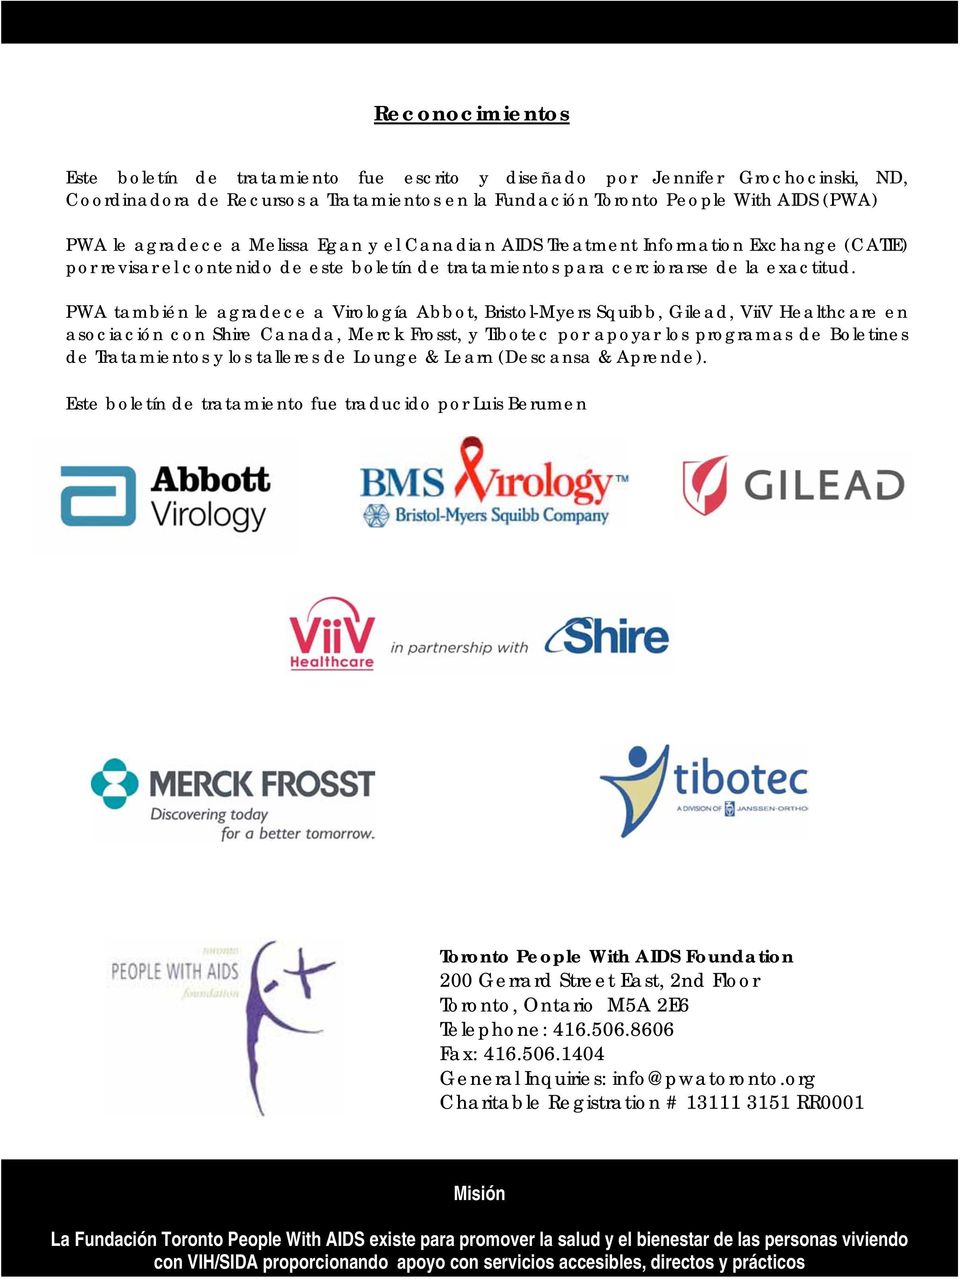 PWA también le agradece a Virología Abbot, Bristol-Myers Squibb, Gilead, ViiV Healthcare en asociación con Shire Canada, Merck Frosst, y Tibotec por apoyar los programas de Boletines de Tratamientos